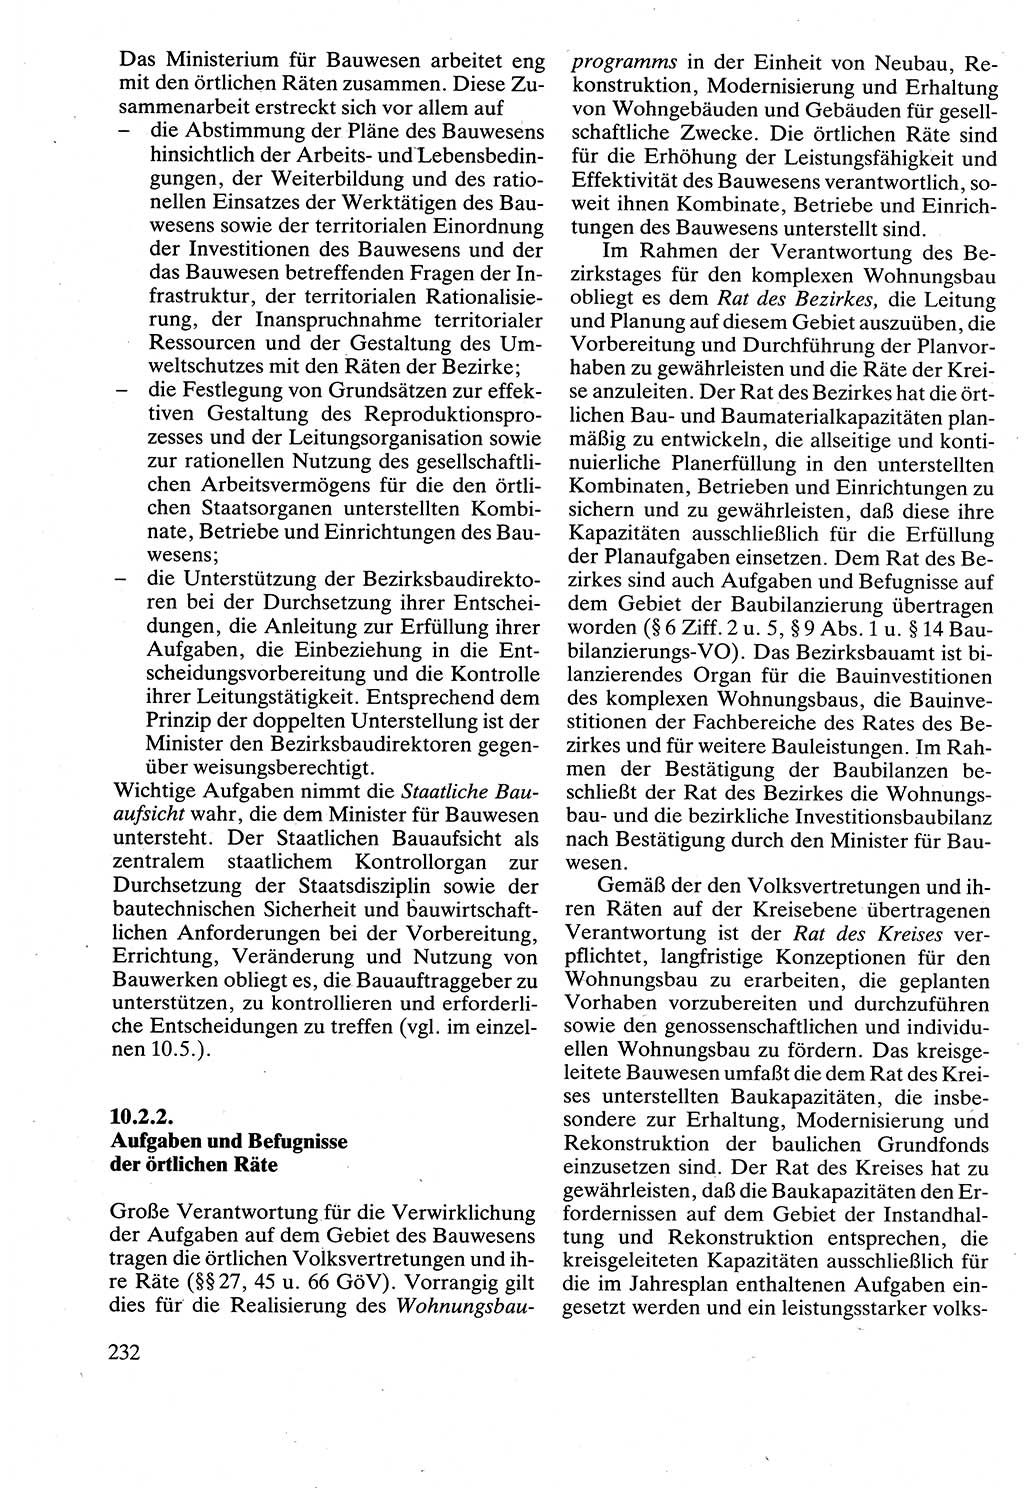 Verwaltungsrecht [Deutsche Demokratische Republik (DDR)], Lehrbuch 1988, Seite 232 (Verw.-R. DDR Lb. 1988, S. 232)